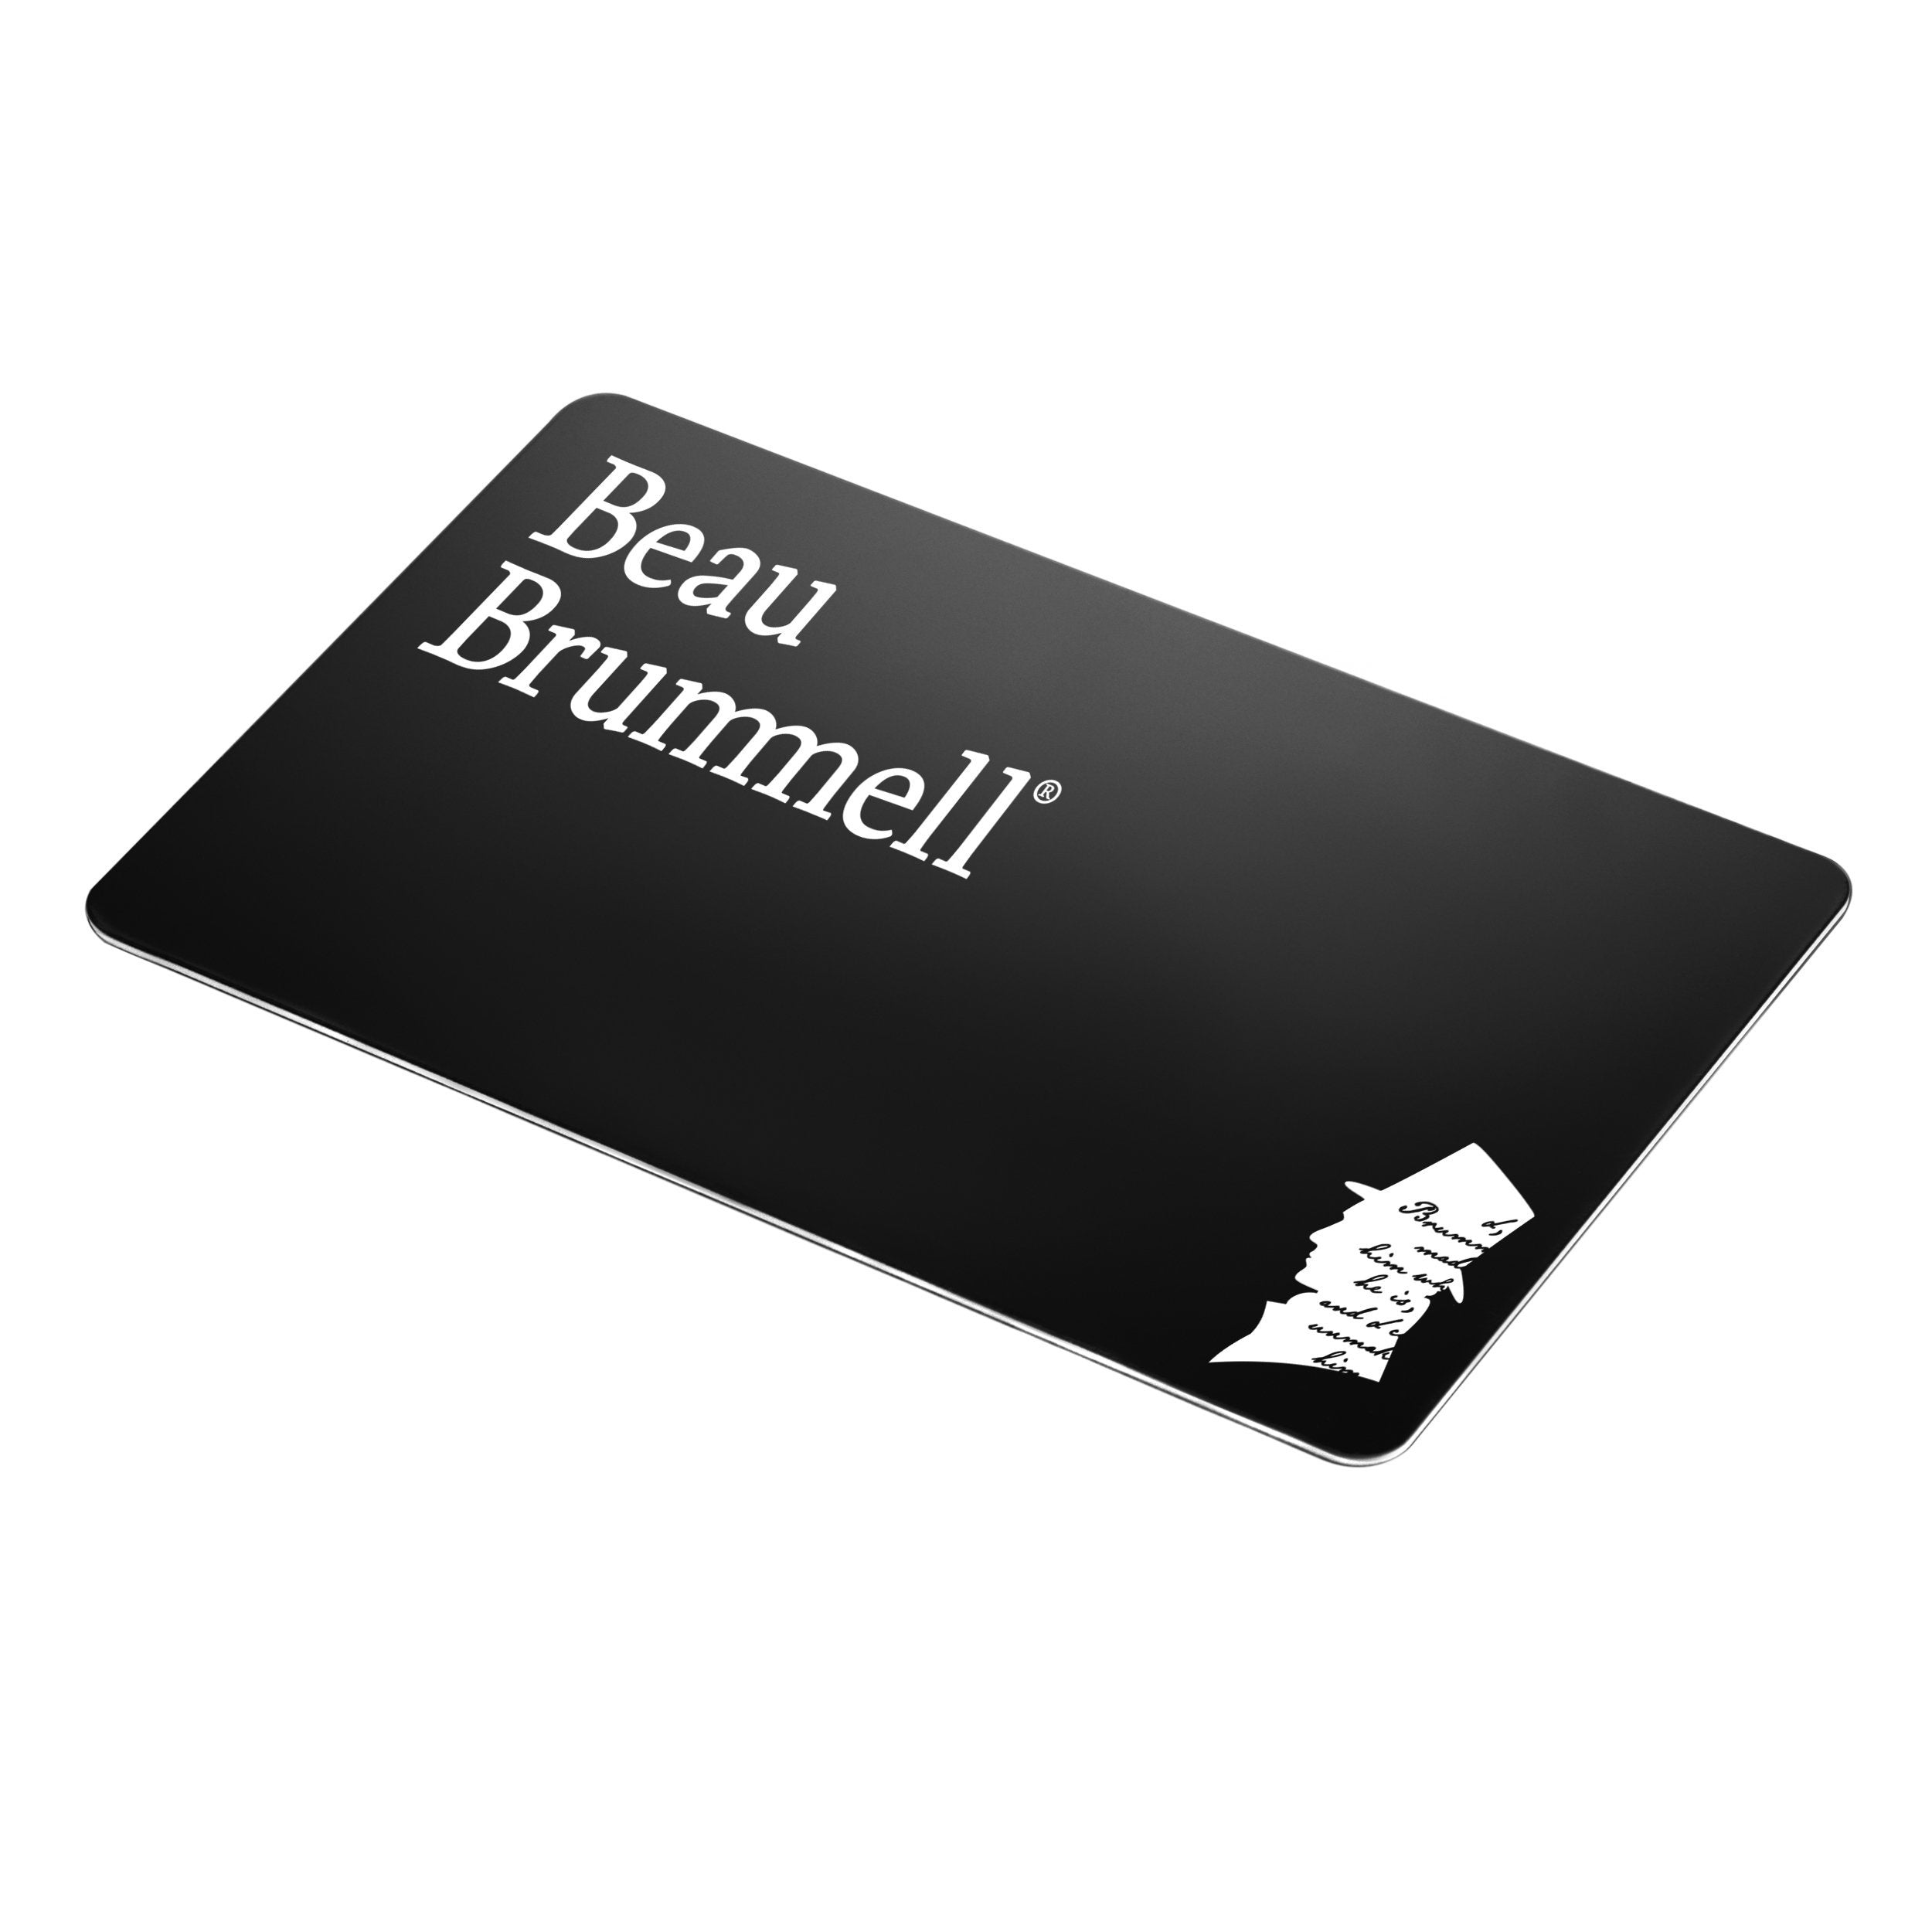 Beau Brummell for Men Gift Card Gifts for Men